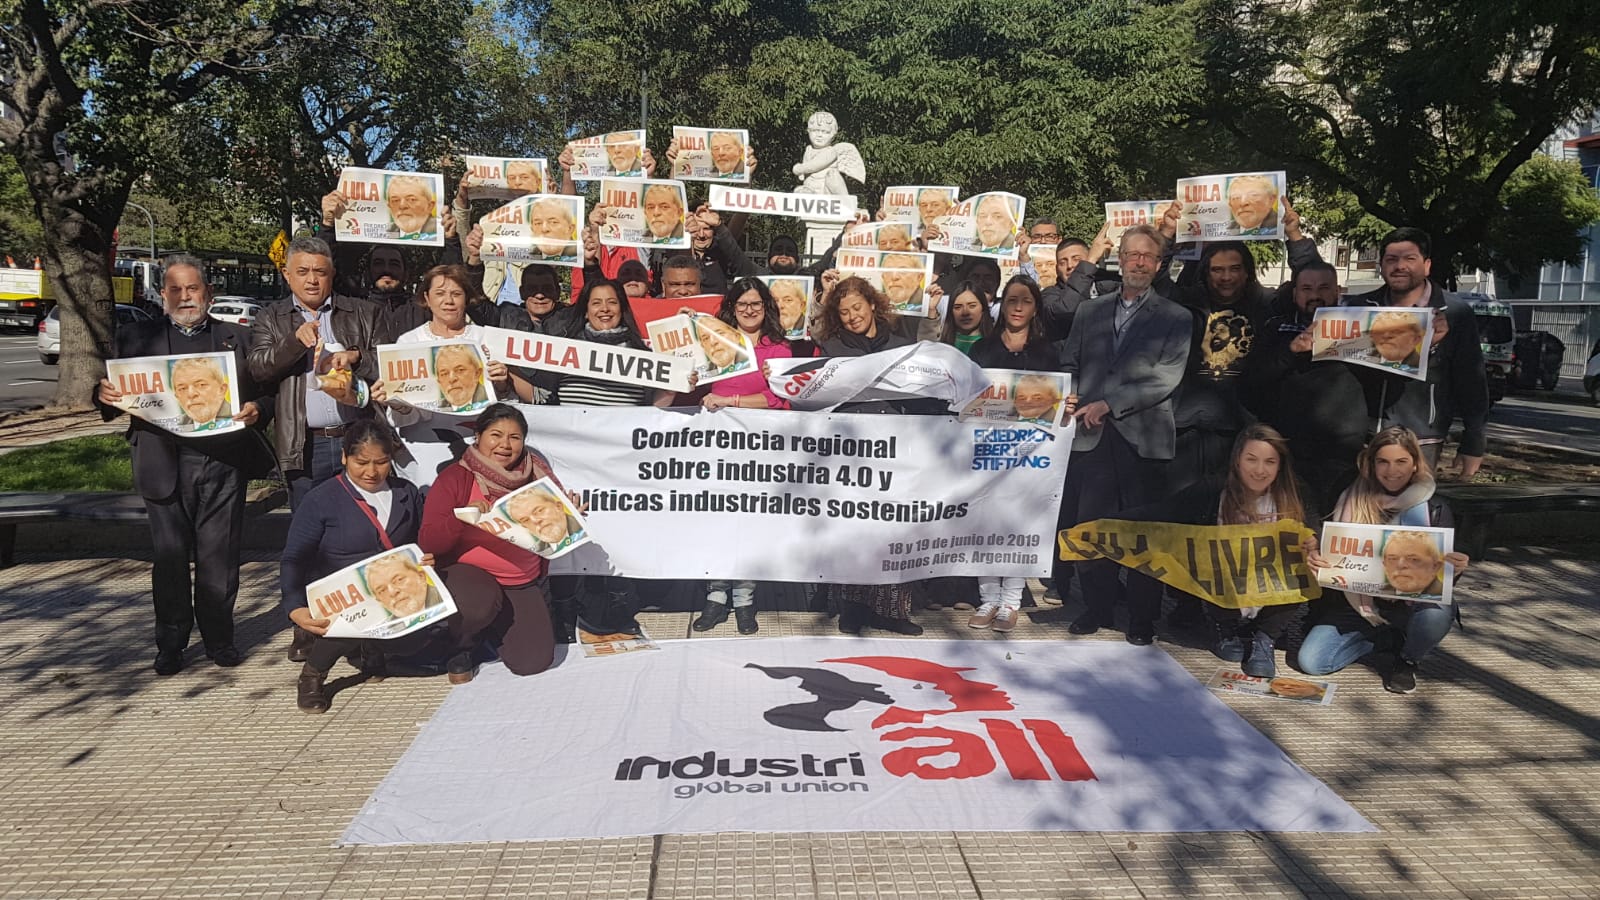  Os participantes da Conferência se manifestaram em defesa da liberdade de Lula